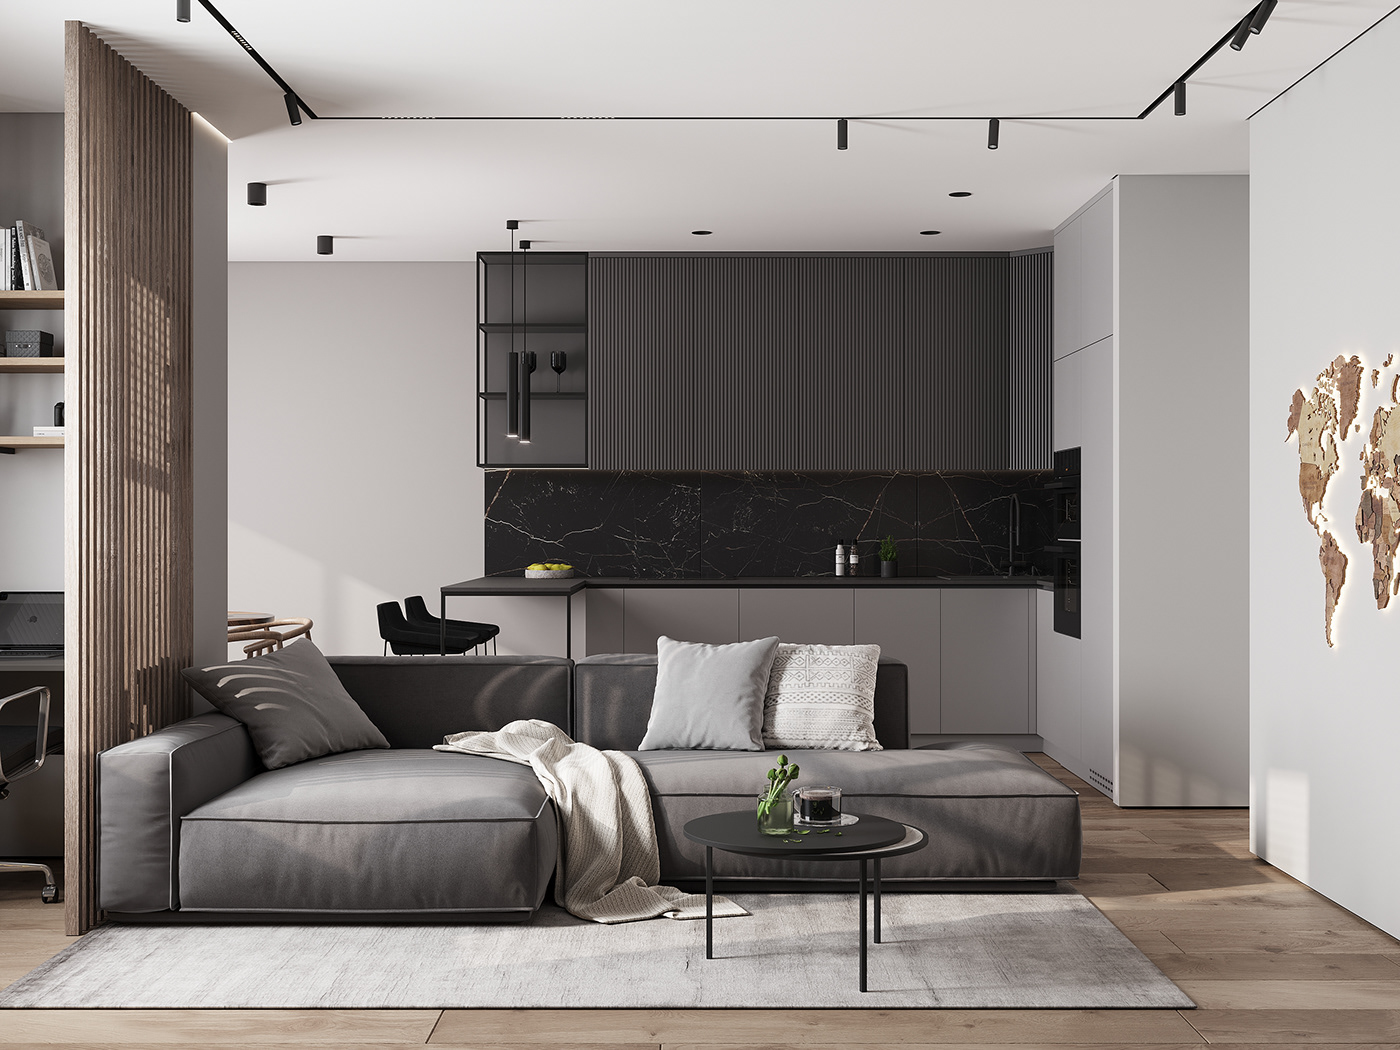 interior design  modern minimal Interior kitchen living room apartment kitchen design дизайн интерьера дизайн кухни 